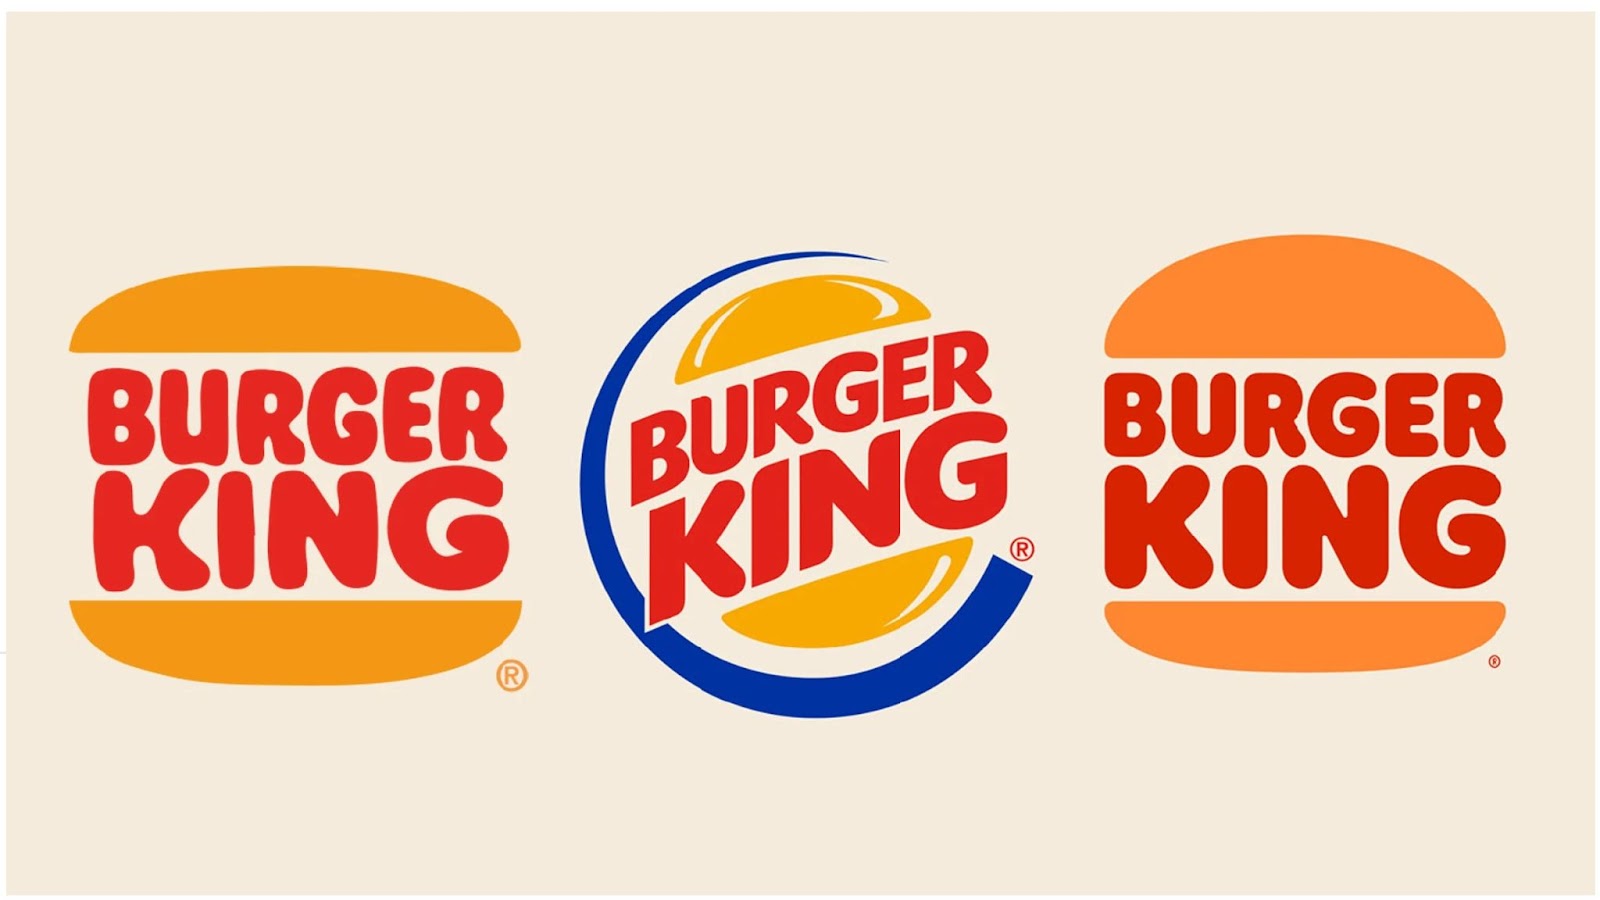 7p trong marketing của burger king